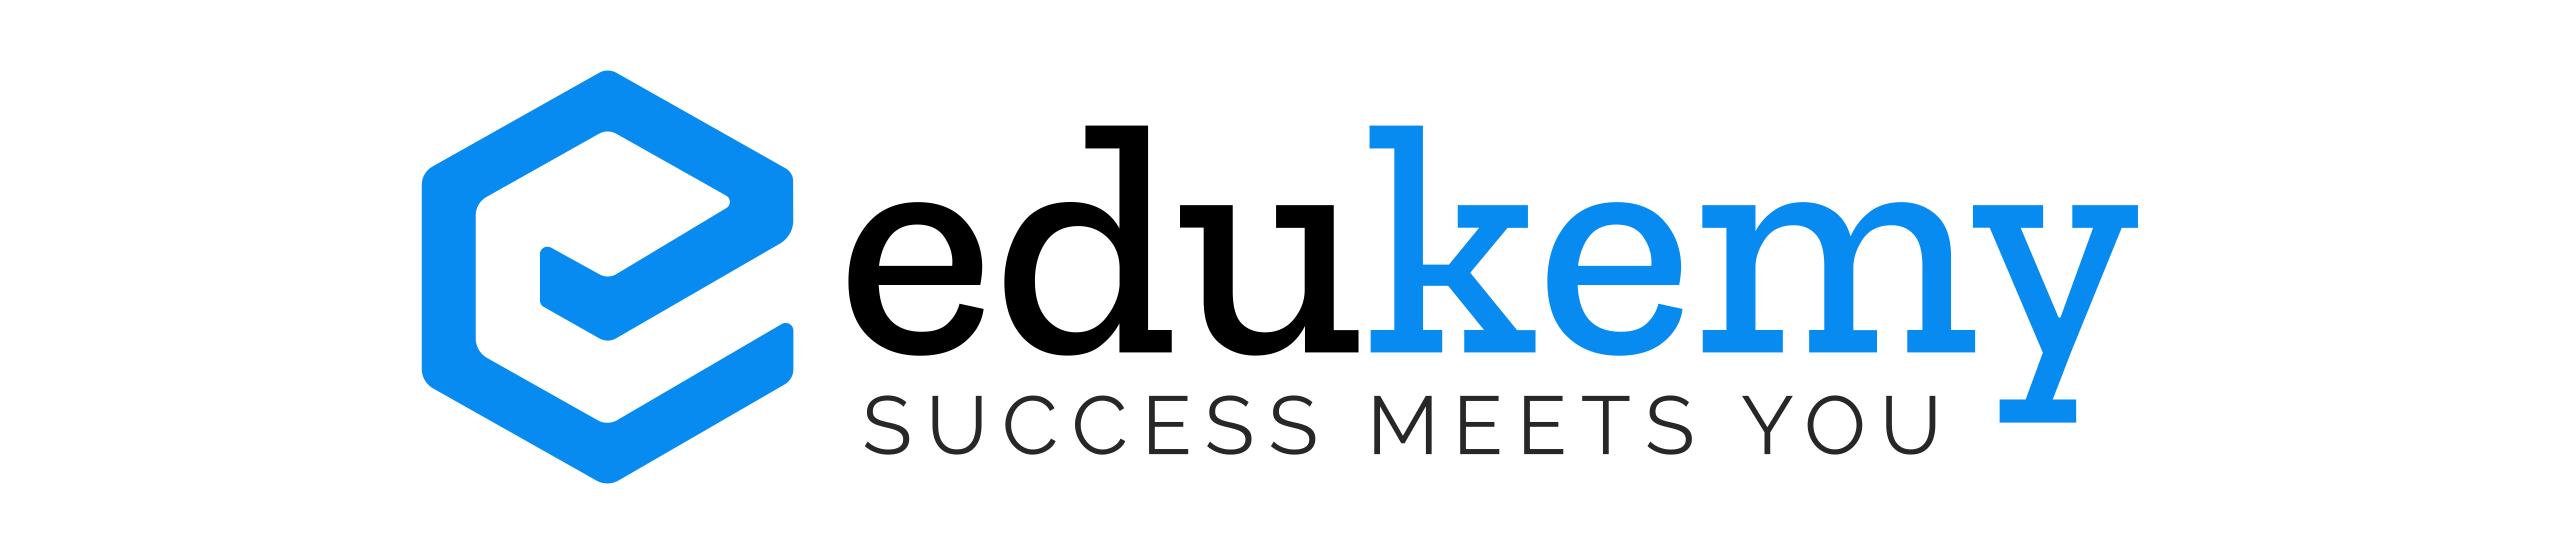 Edukemy Logo